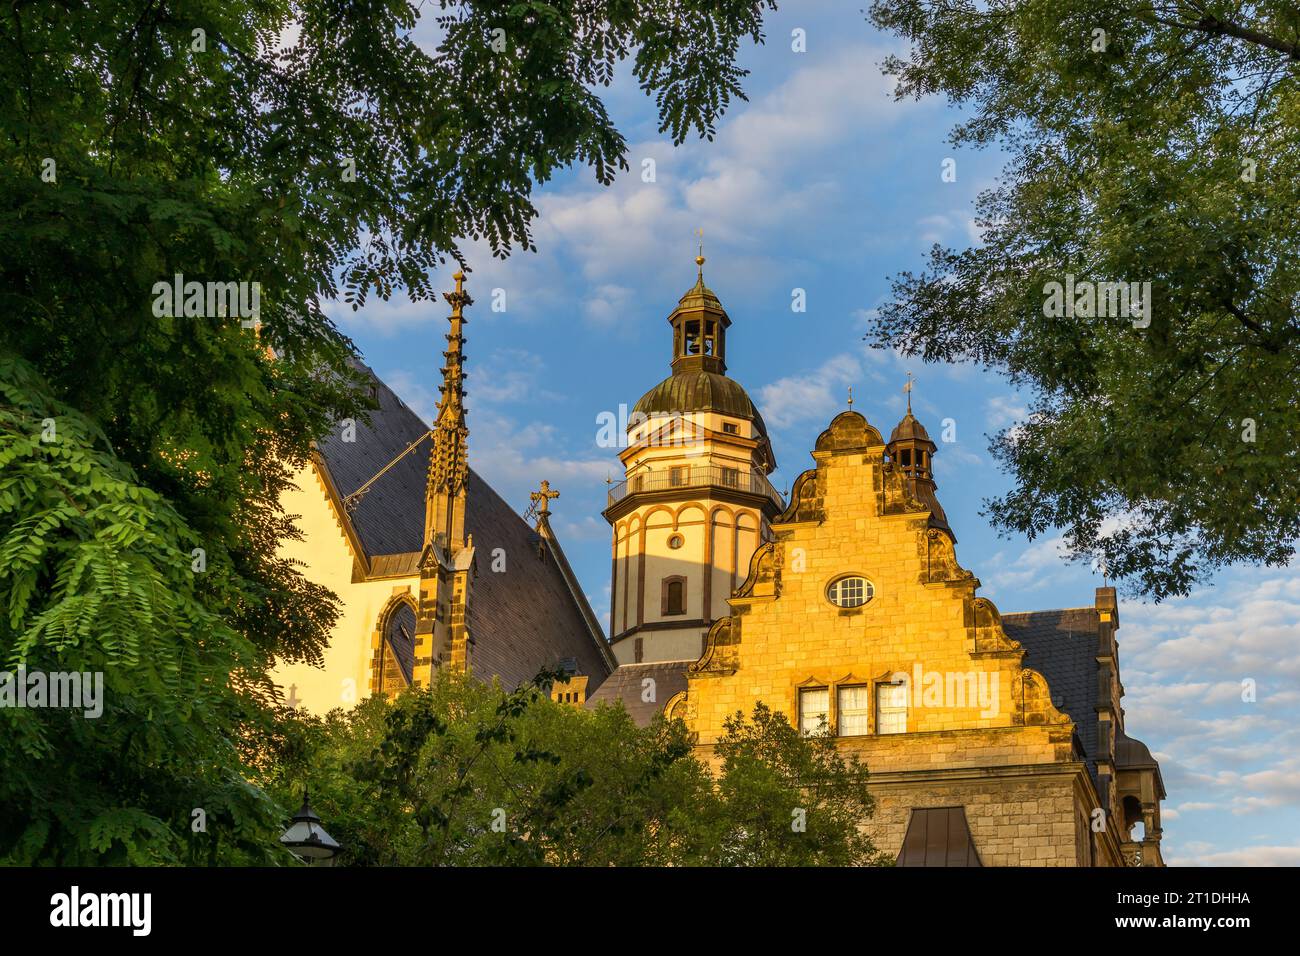 Thomaskirche, Leipzig, Saxony, Germany, Europe Stock Photo